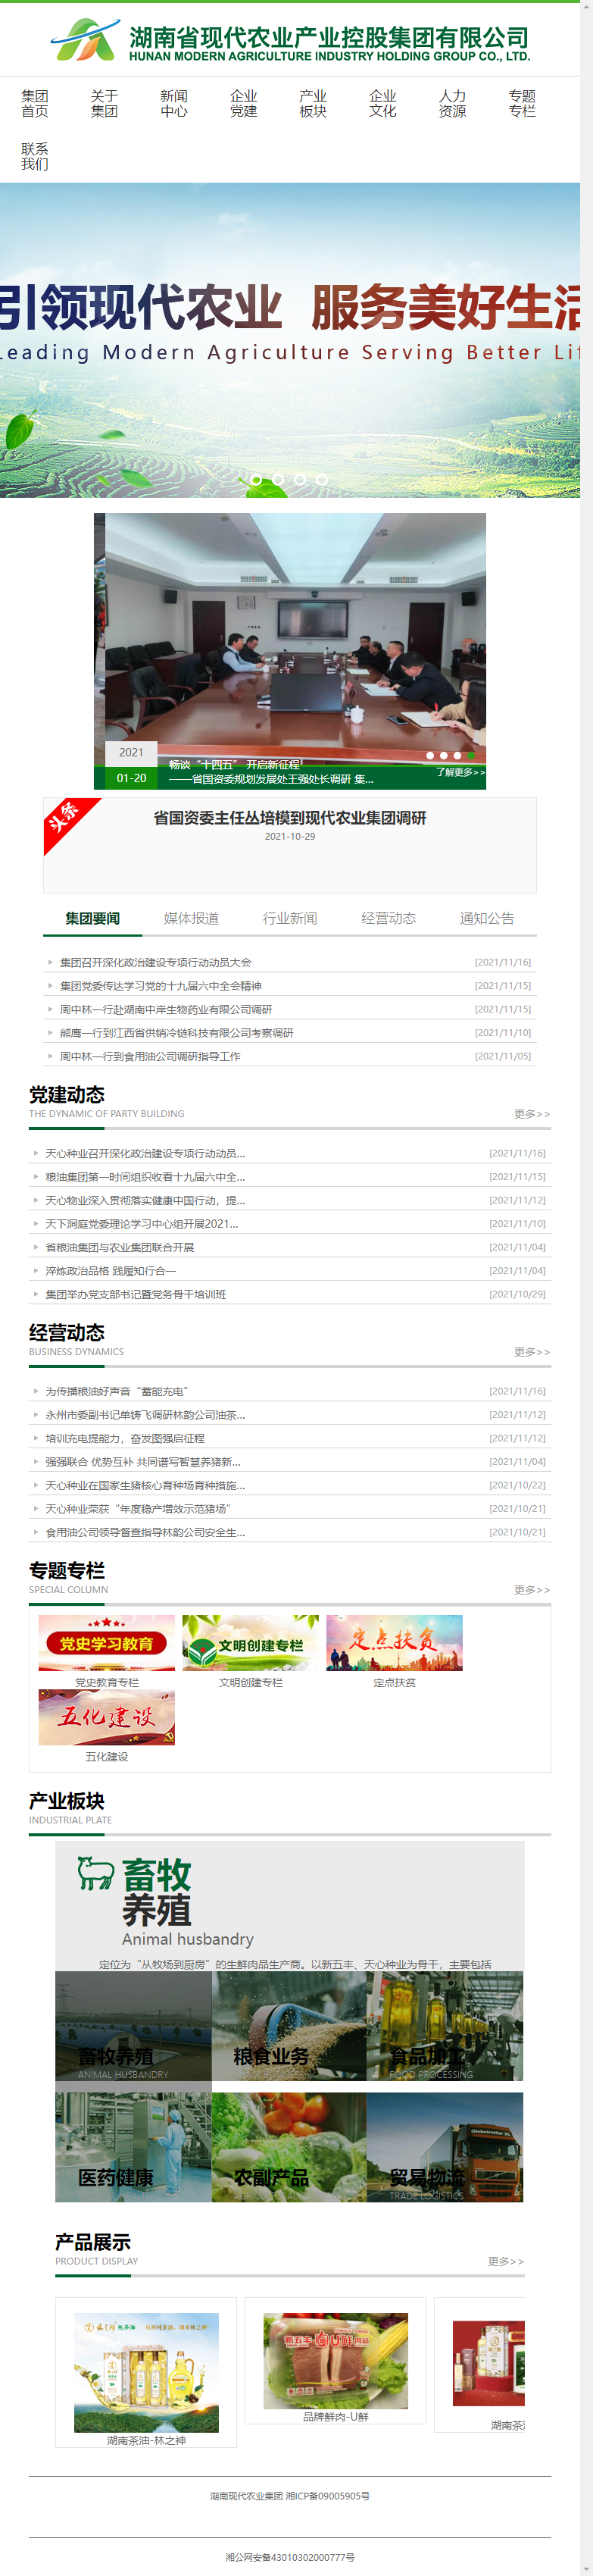 湖南省现代农业产业控股集团有限公司网站案例